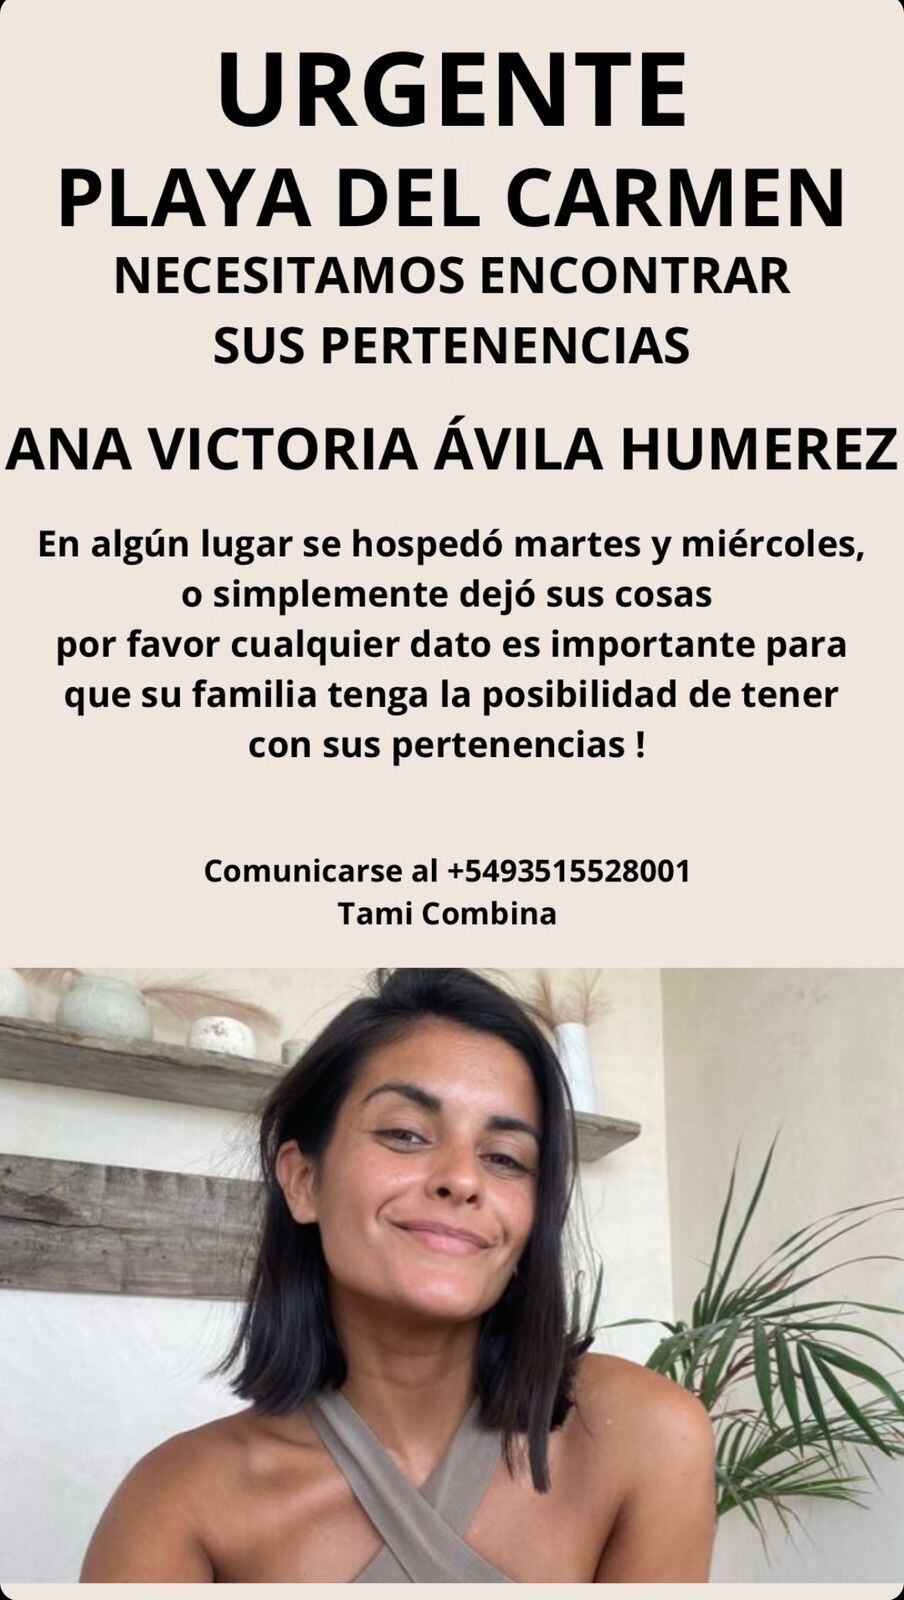 El pedido de los familiares y amigos de Ana Victoria Ávila